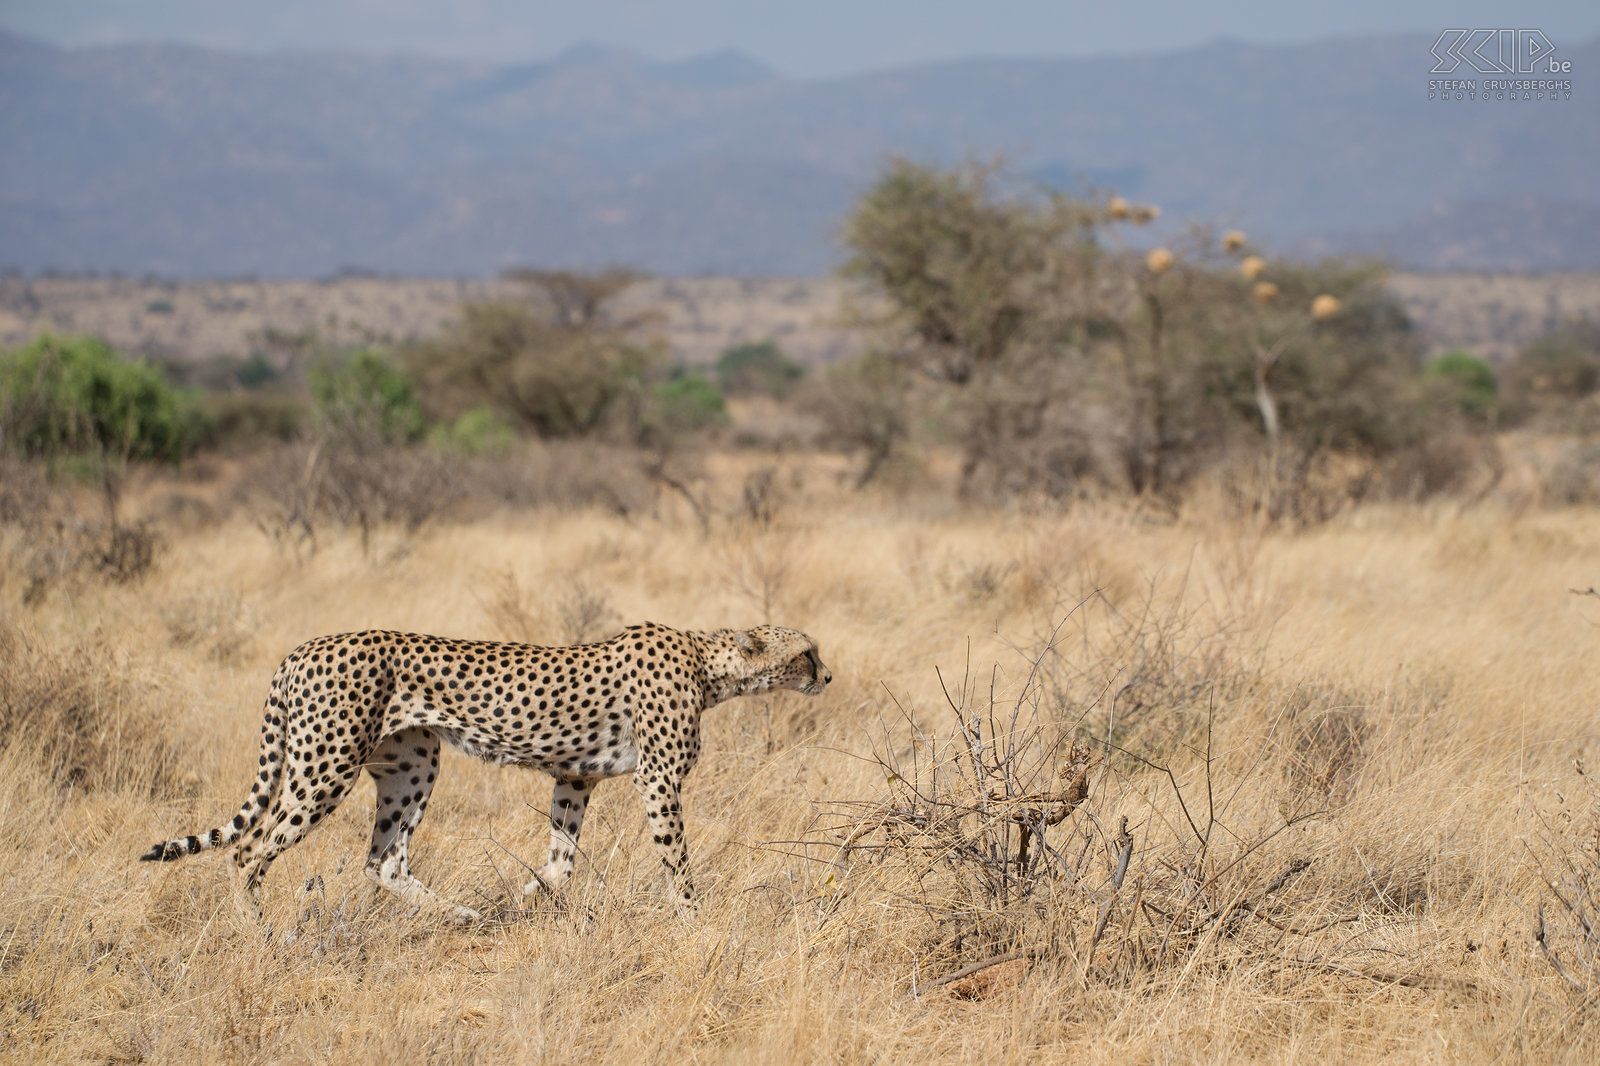 Samburu - Cheeta We komen opnieuw een cheeta/jachtluipaard (Cheetah, Acinonyx jubatus) tegen. Cheeta’s jagen gedurende de dag en ze vallen aan met snelheid, in plaats van naar hun prooi te sluipen zoals leeuwen doen. De cheetah is het snelste landdier, het kan snelheden van 110 tot 120km/u halen in sprintjes van maximaal 500m. Stefan Cruysberghs